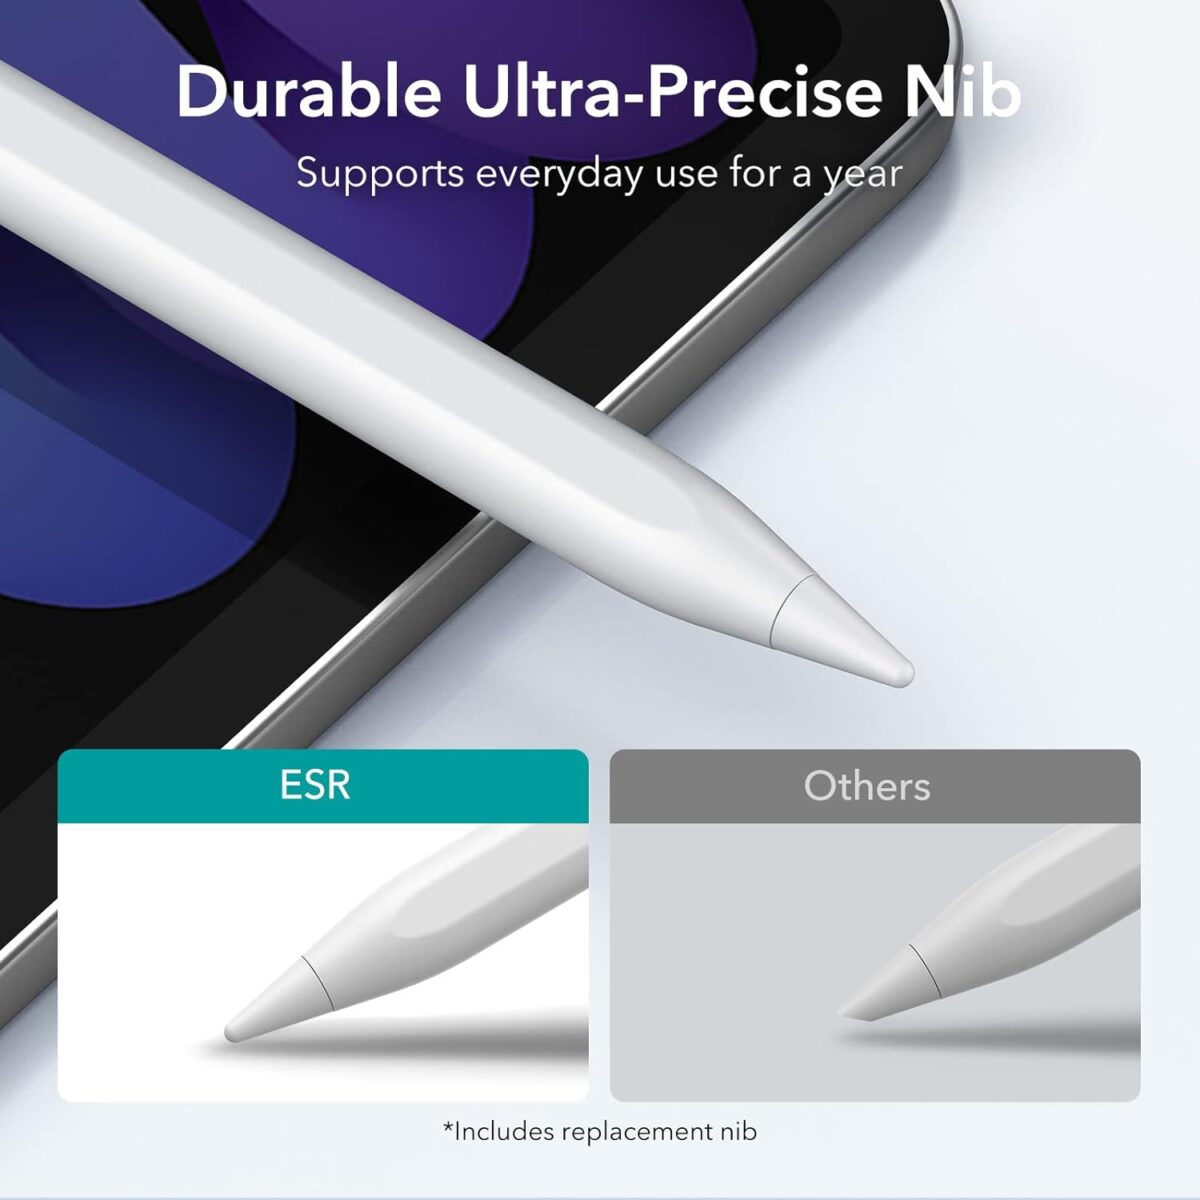 ESR Digital Stylus Pencil for iPad with Durable ultra precise nib